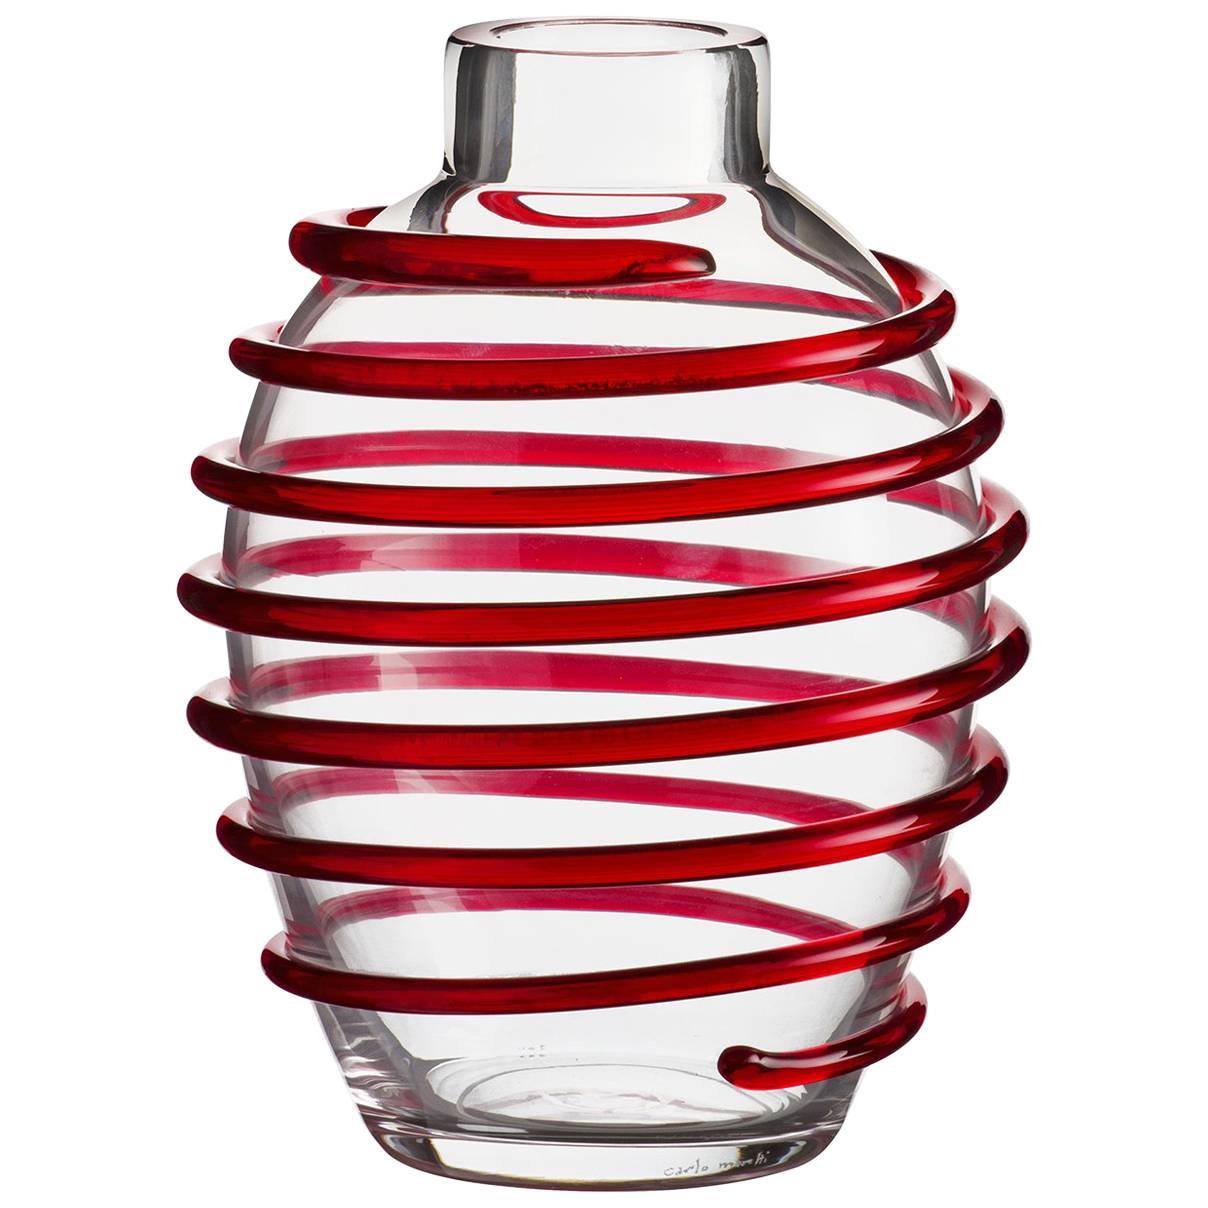 Nunki Carlo Moretti Contemporary Mouth Blown Murano Glass Vase